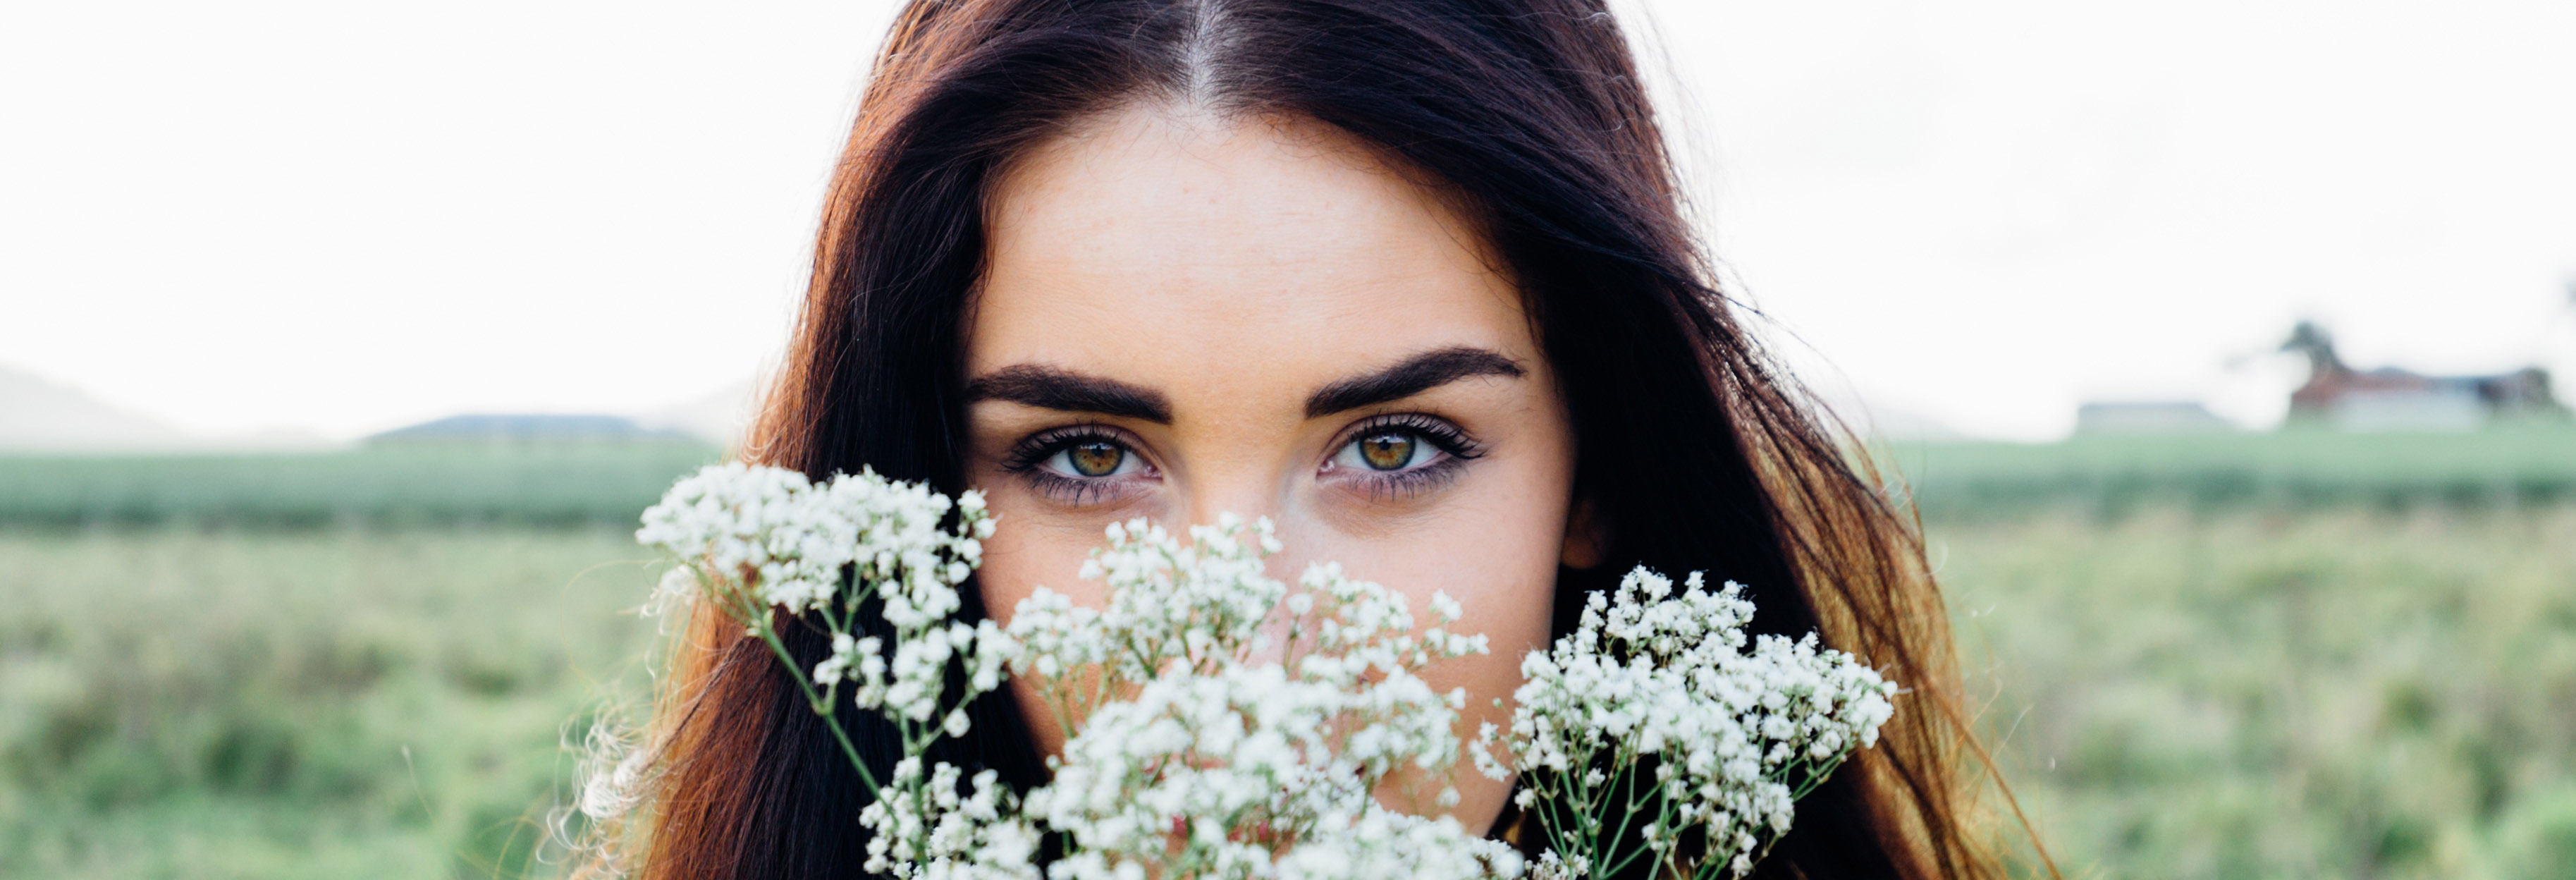 Jak pielęgnować skórę wokół oczu? Sposoby na piękne spojrzenie